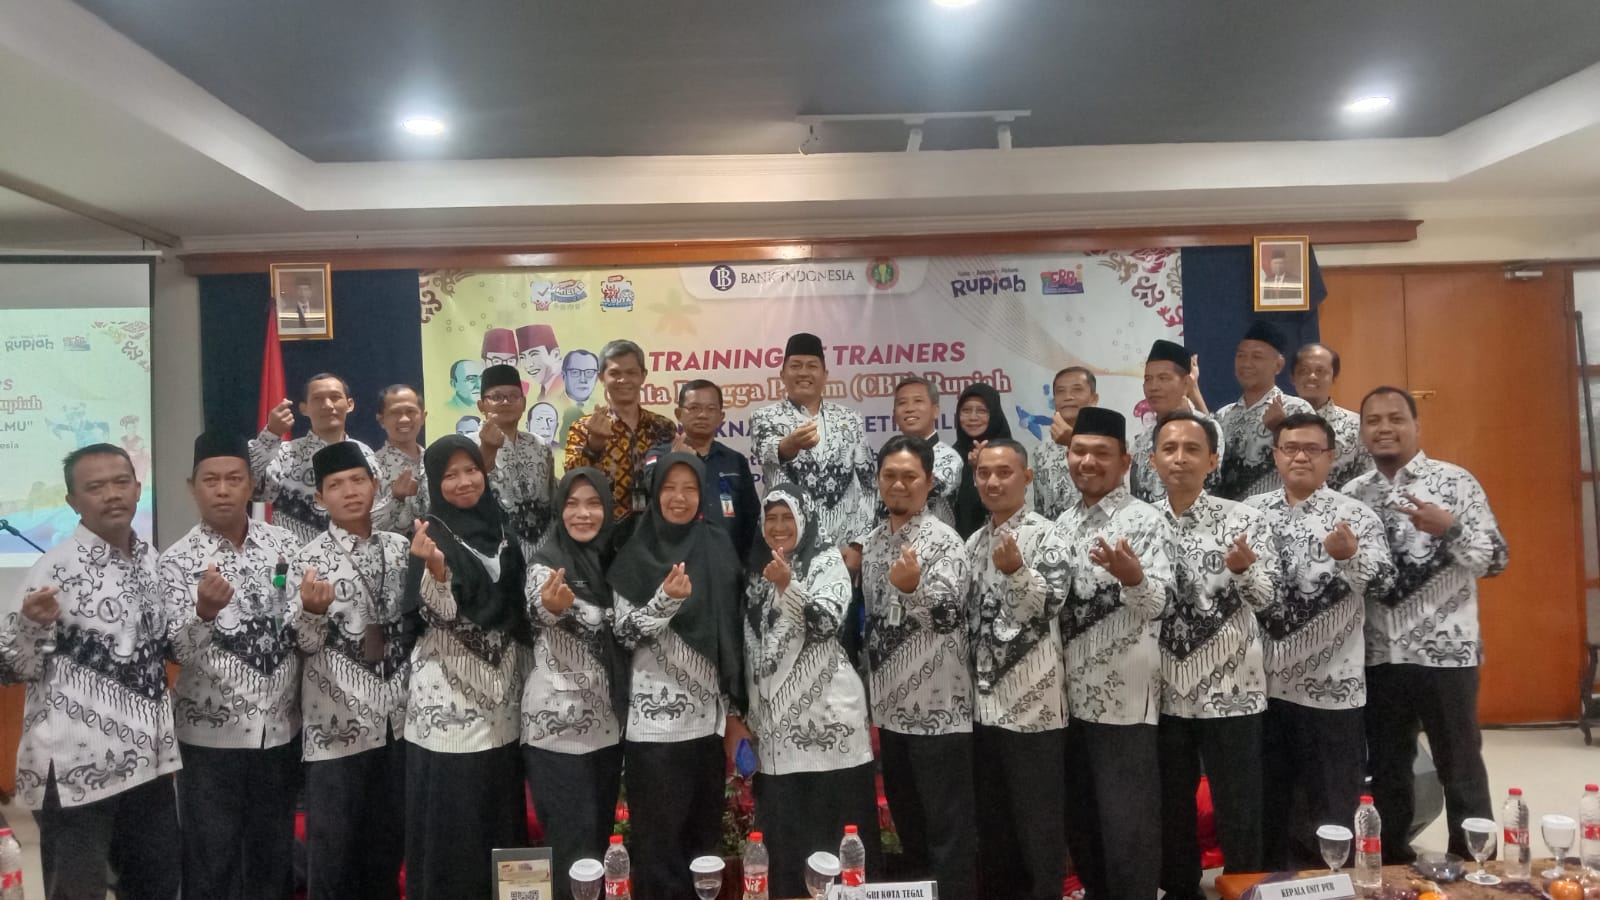 Demi Cinta Bangga Paham Rupiah, Bank Indonesia Gandeng PGRI untuk Training of Trainers 